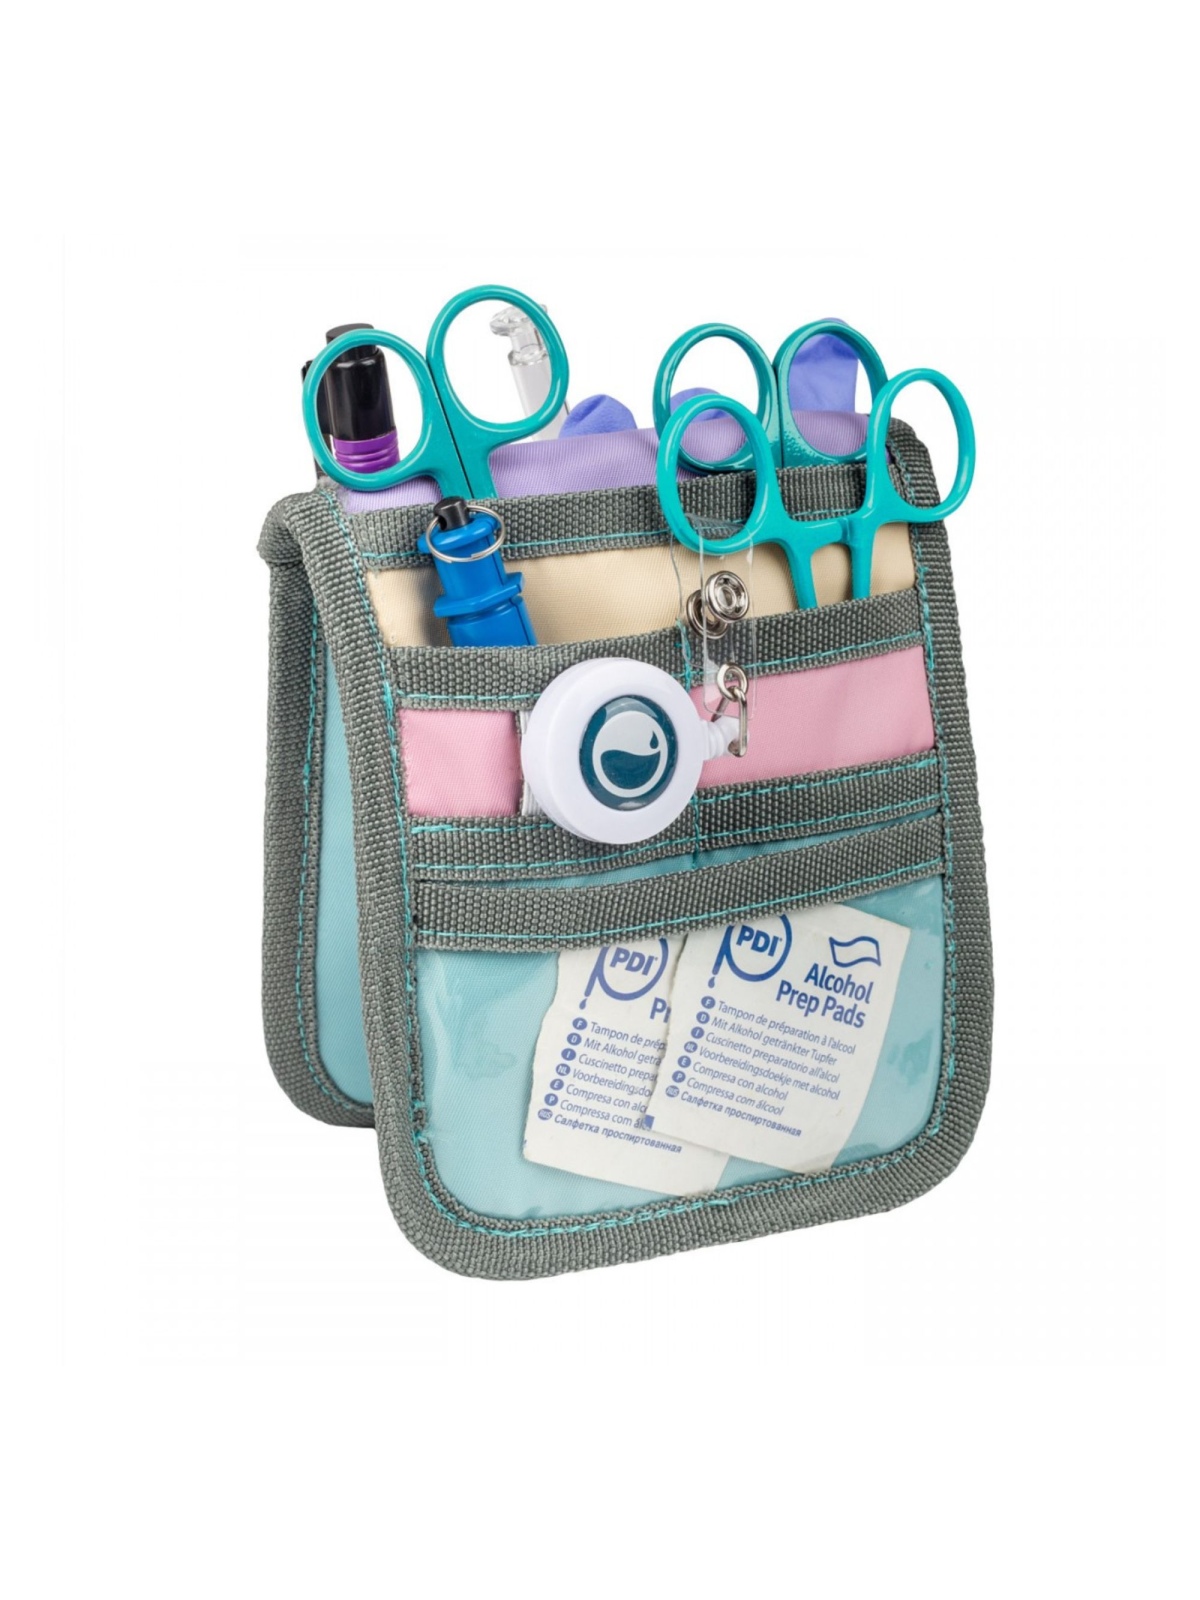 Salvabolsillos enfermería, Para bata o pijama, Organizador enfermeria, Accesorios, Kit práctico, Azul